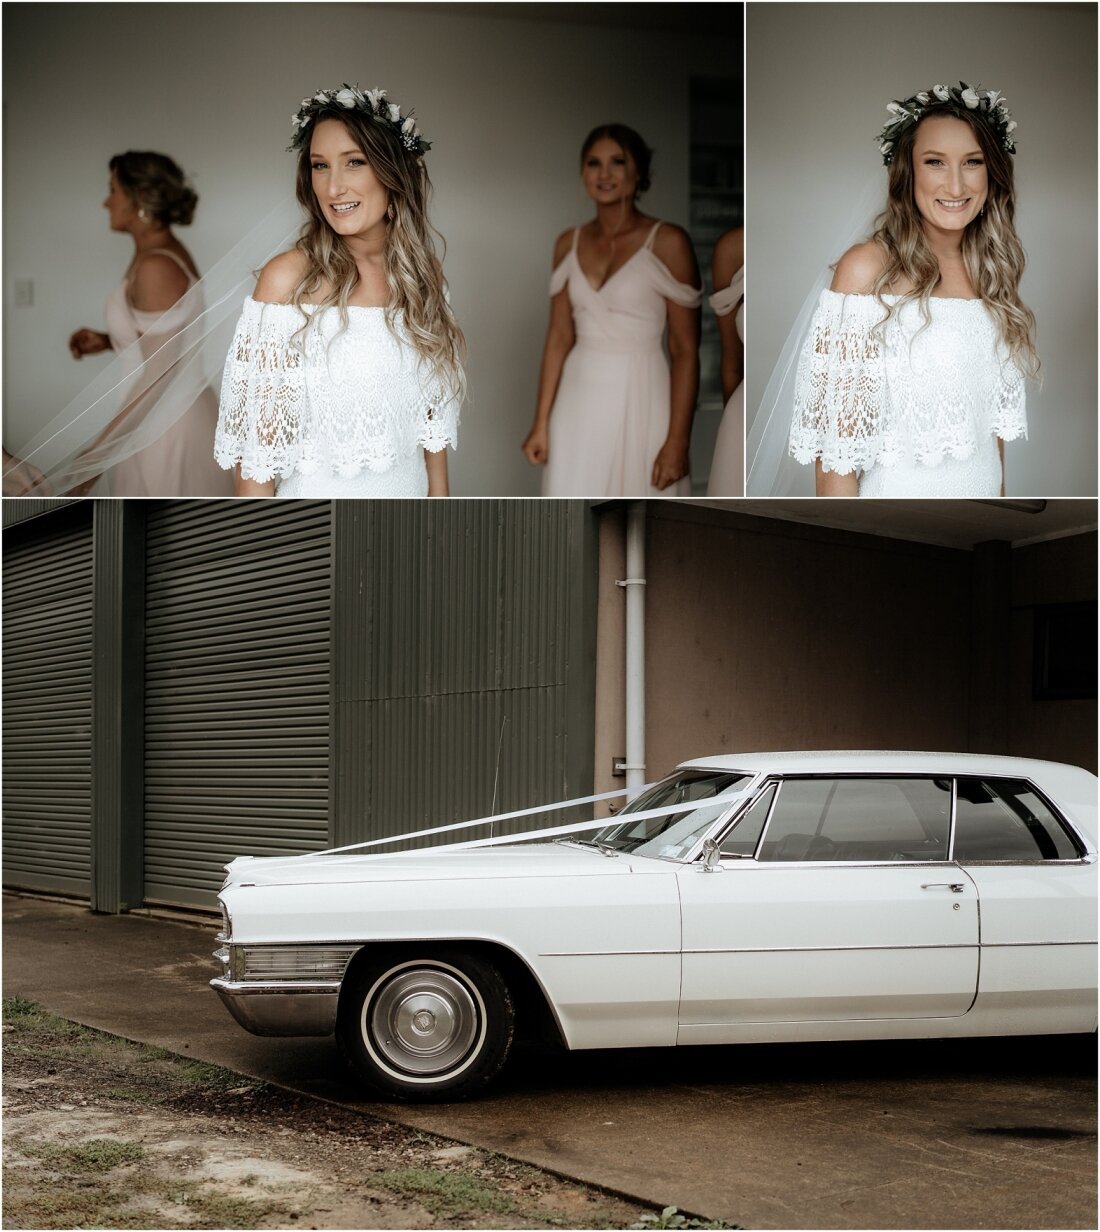 Zanda+Auckland+wedding+photographer+boho+vintage+lace+retro+The+barn+Waimauku+venue+New+Zealand_13.jpeg